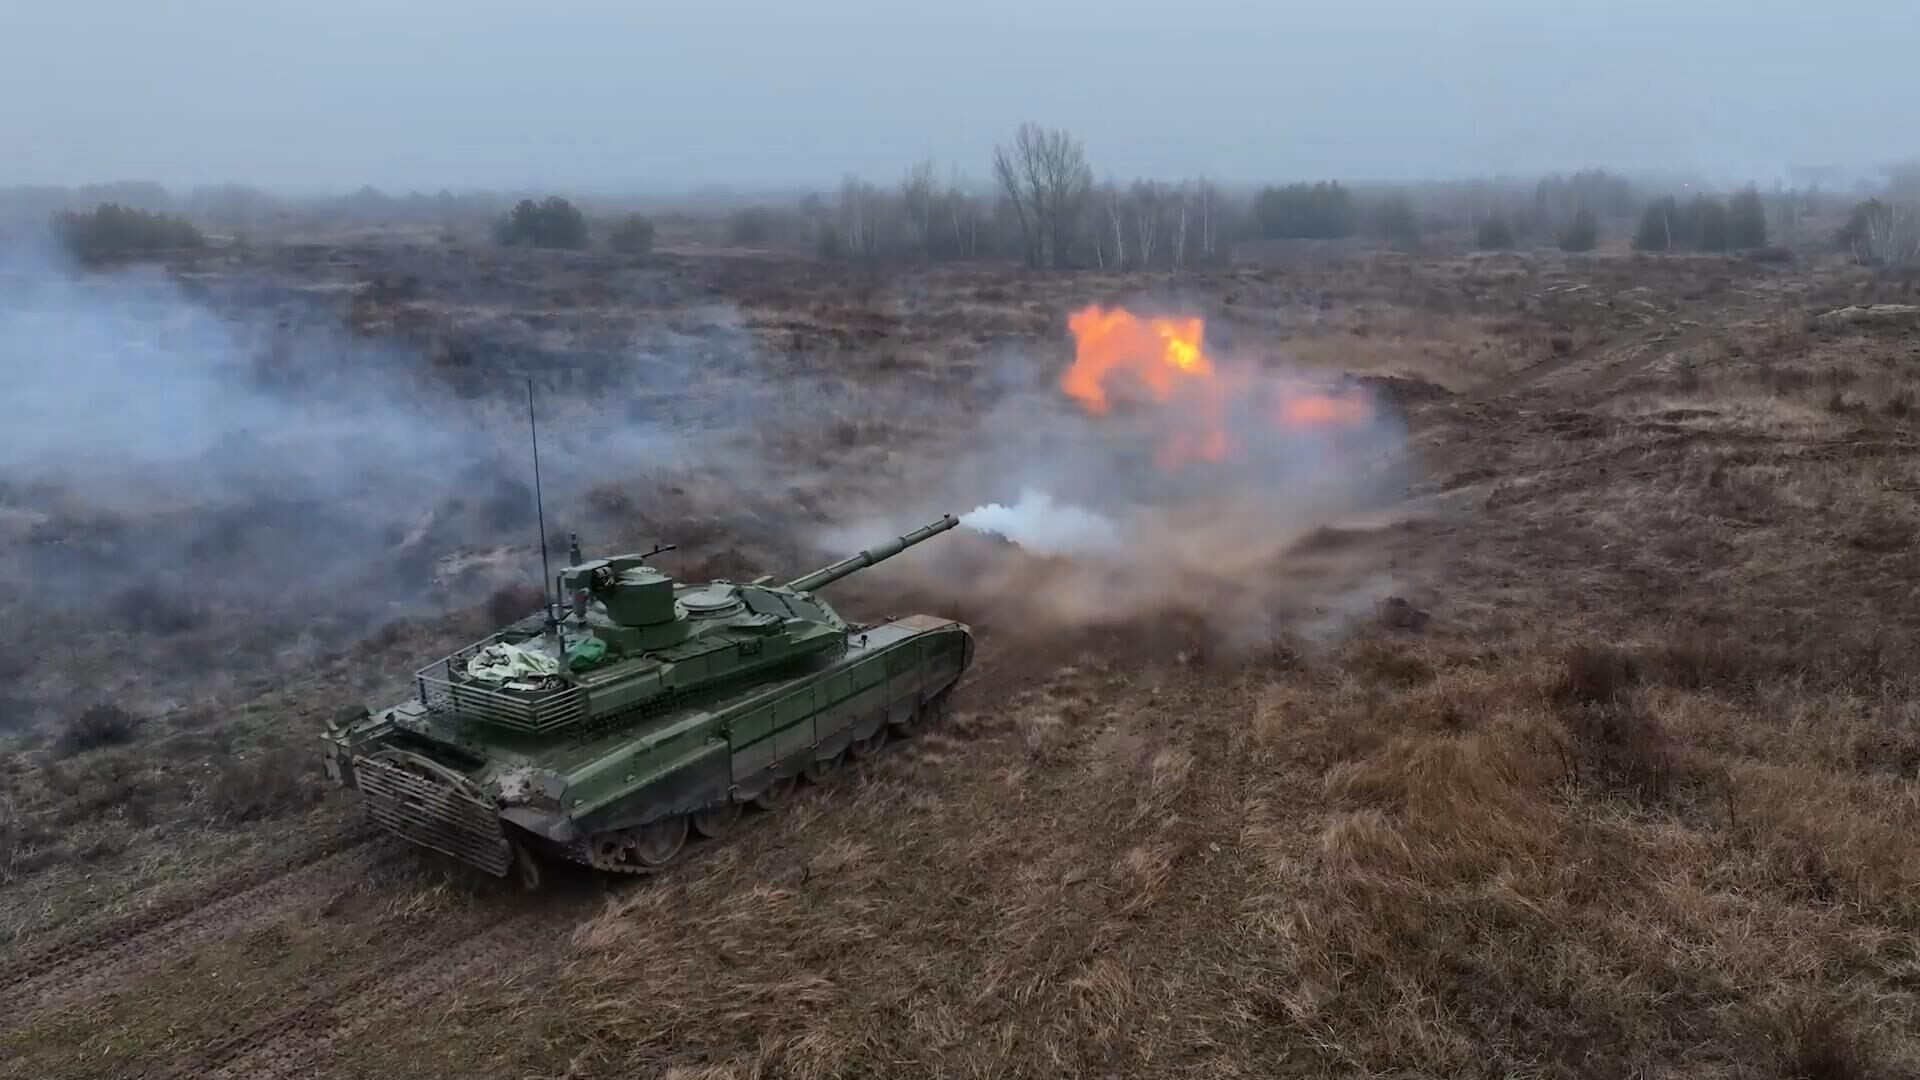 Video T-90M Proryv của Nga né tên lửa chống tăng